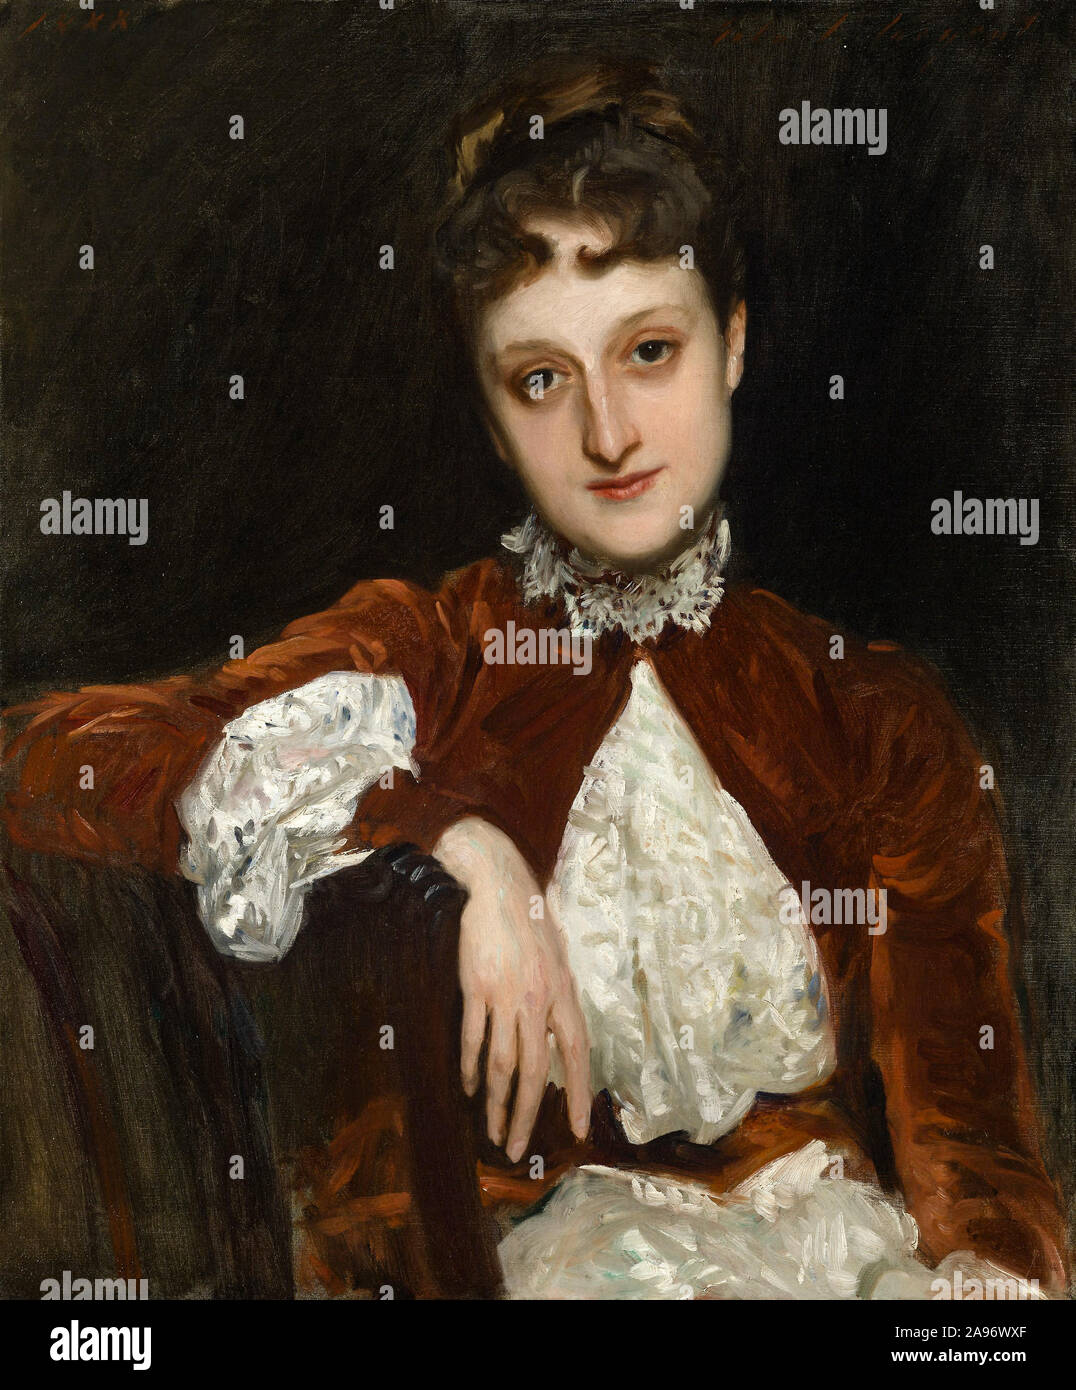 John Singer Sargent, Mme Charles Deering (Marion) Whipple Denison, portrait, 1888 Banque D'Images